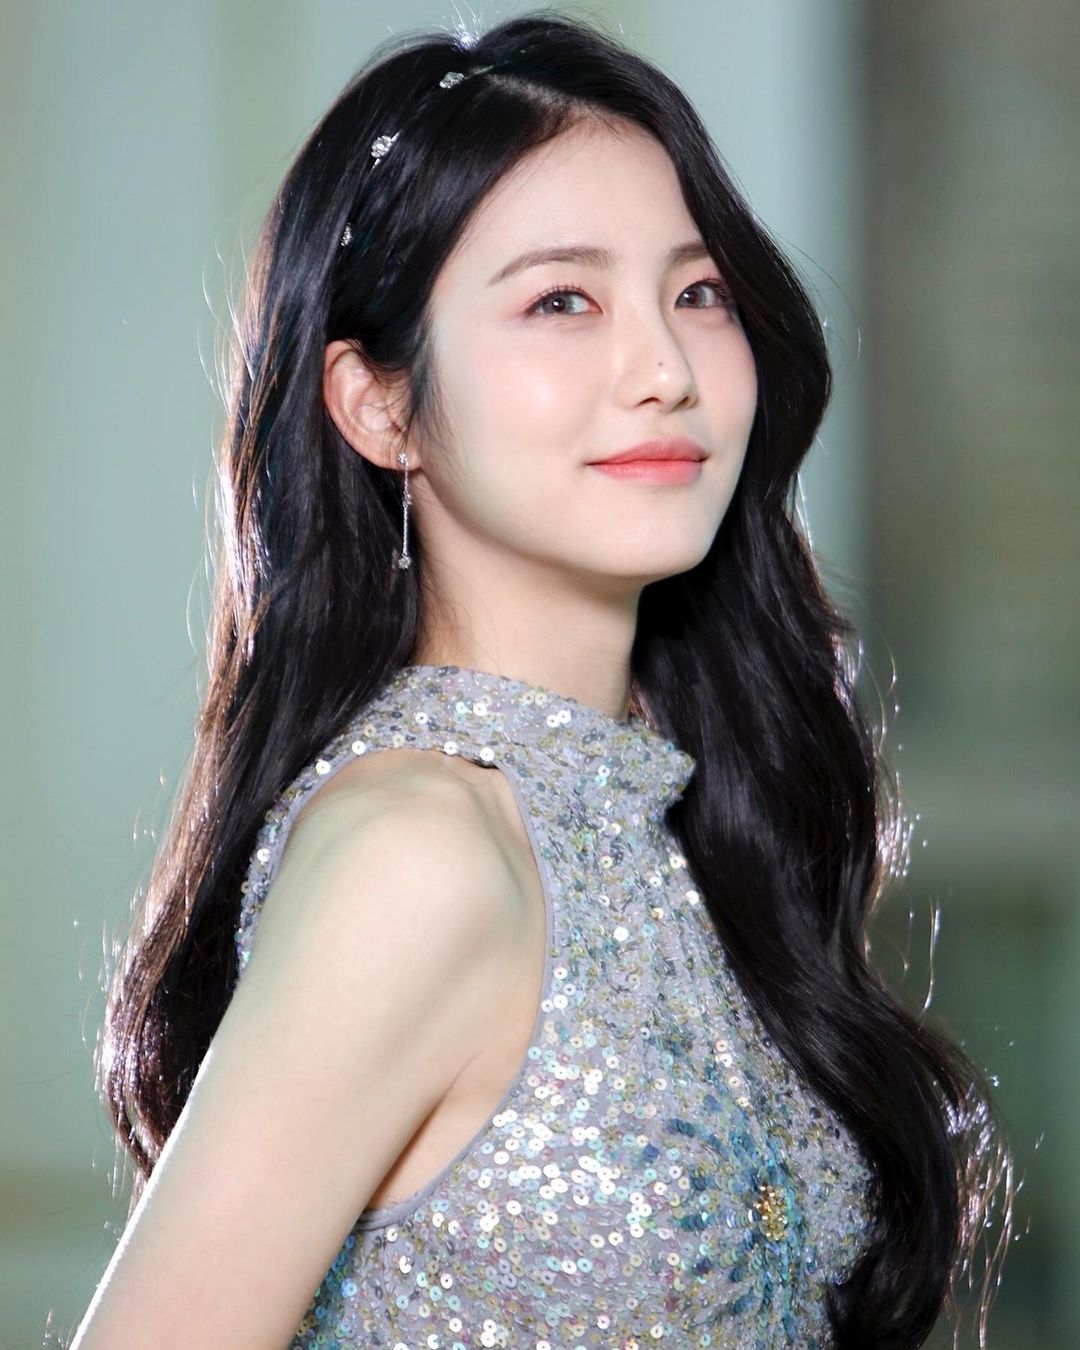 Shin Ye-Eun